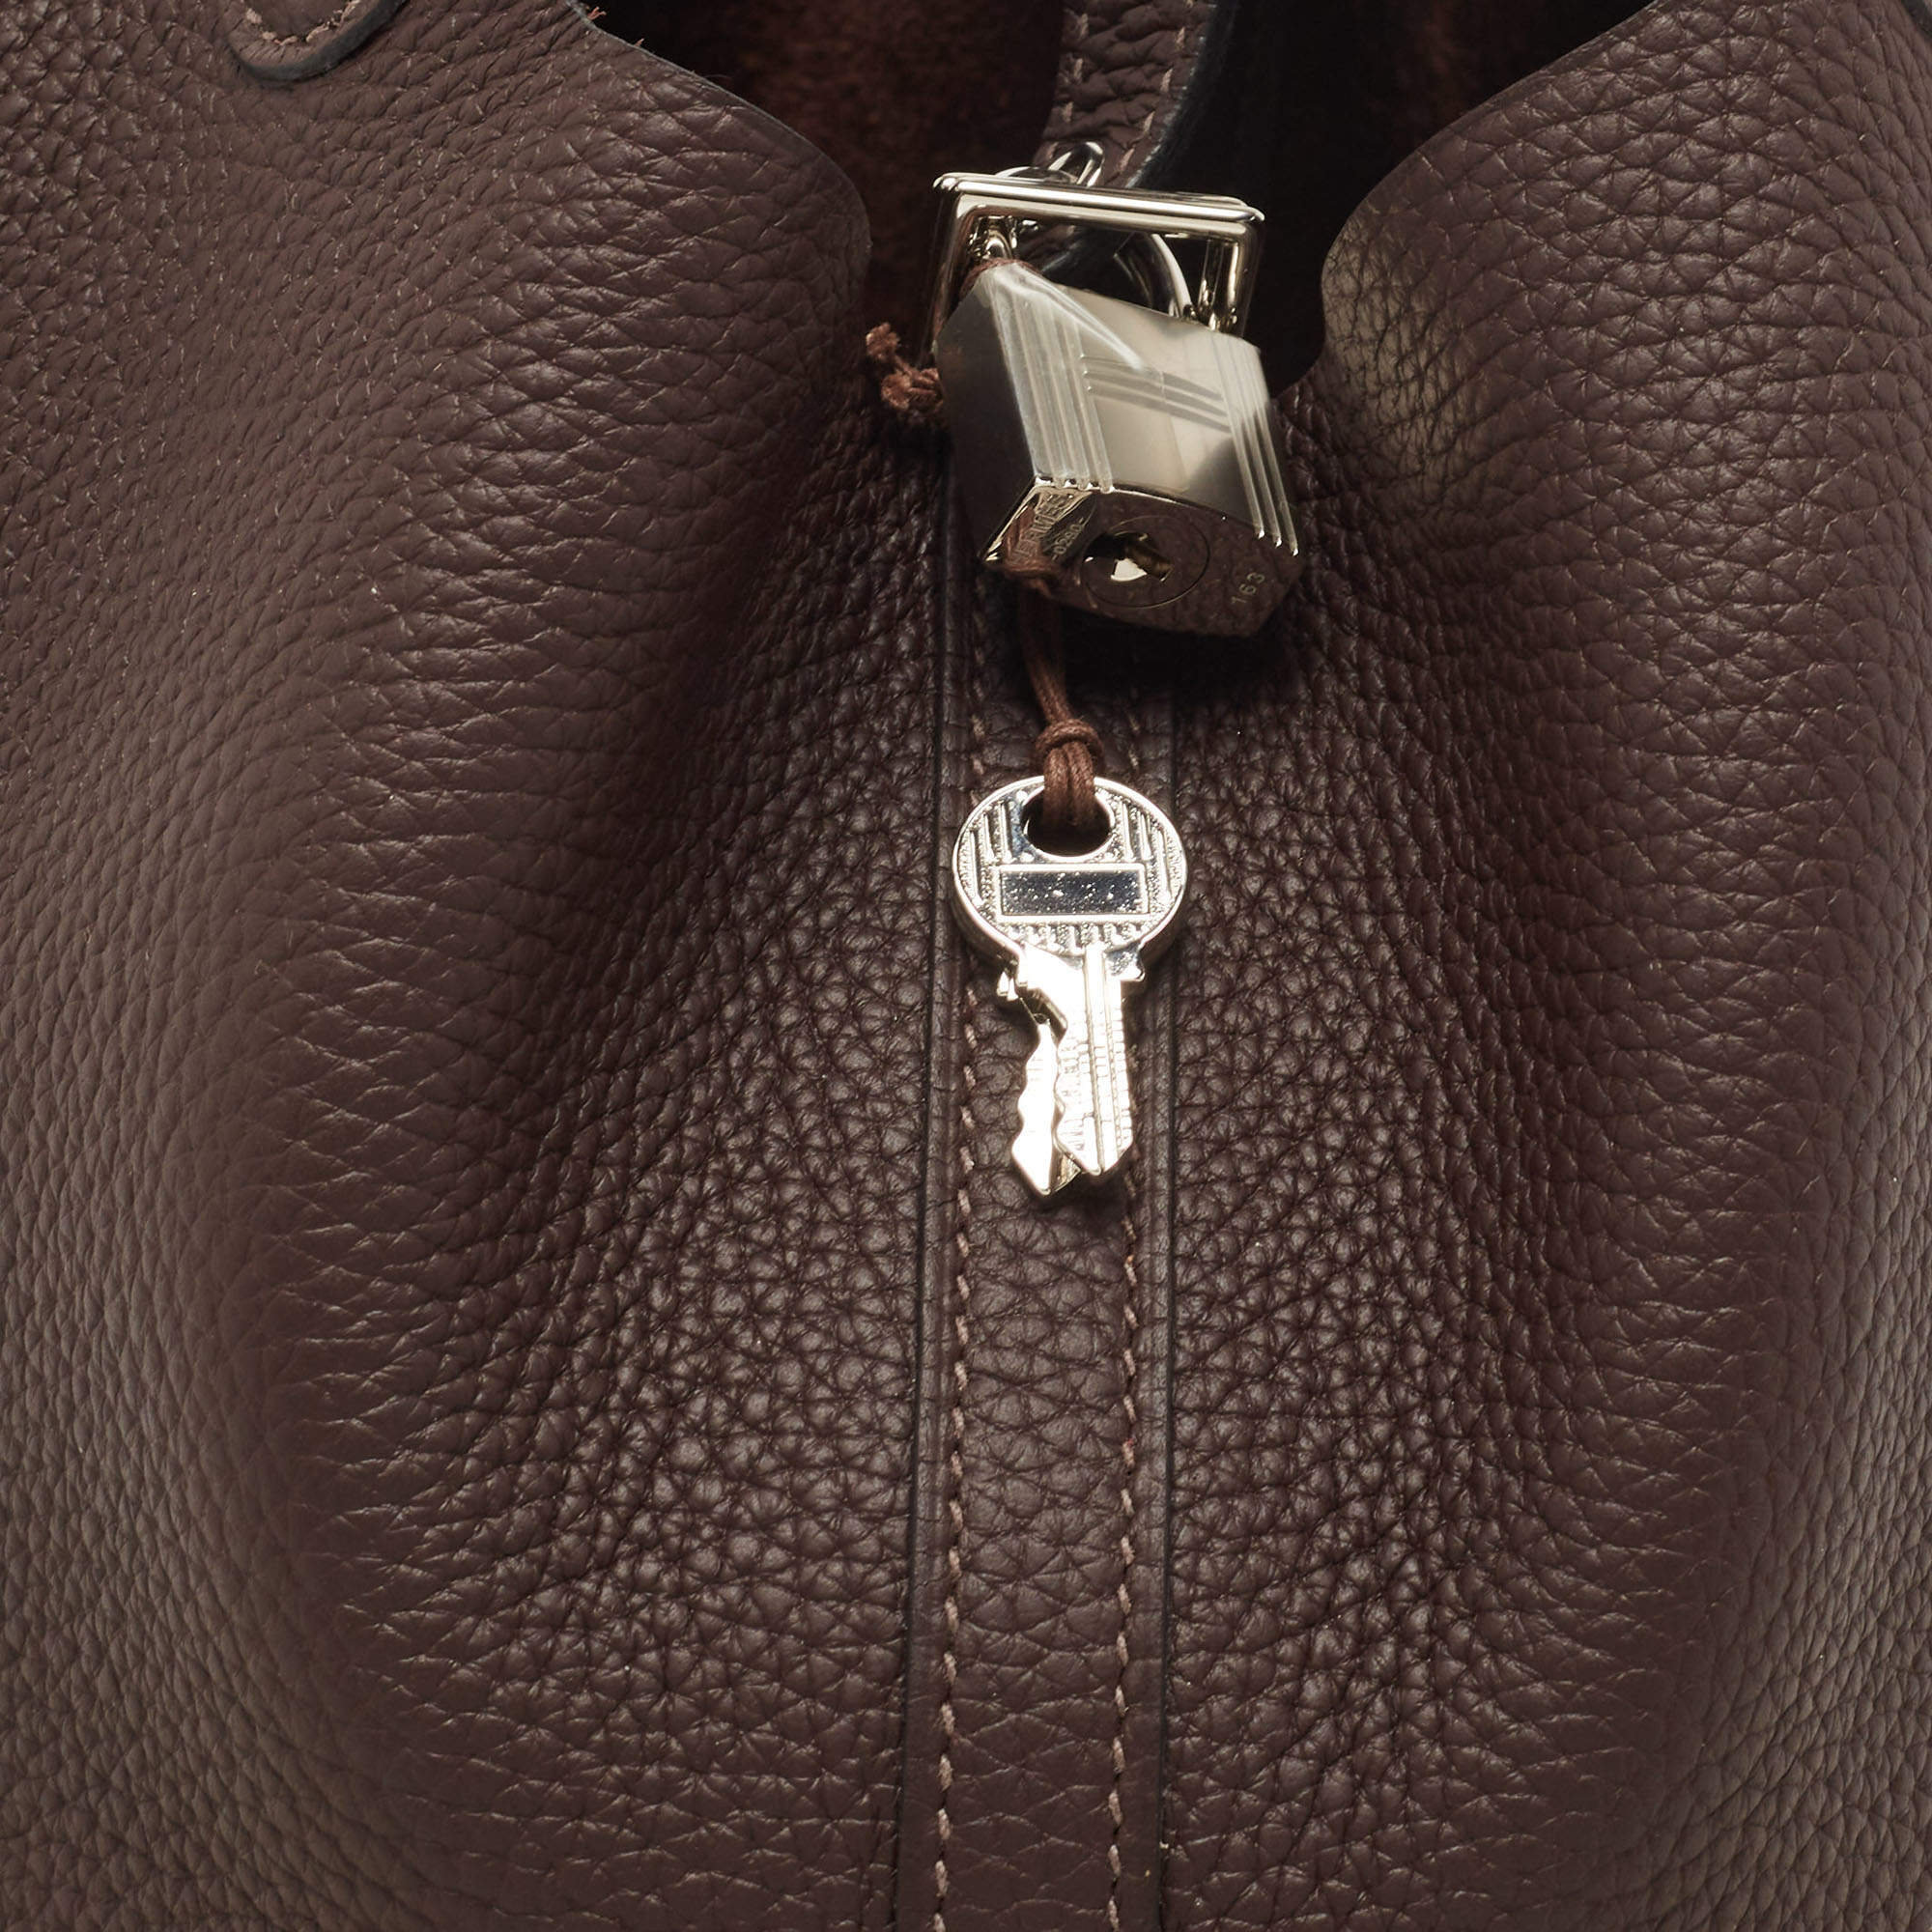 Hermes 22cm Bi-Color Rouge H/Brique Clemence Leather Picotin Lock MM Bag -  Yoogi's Closet